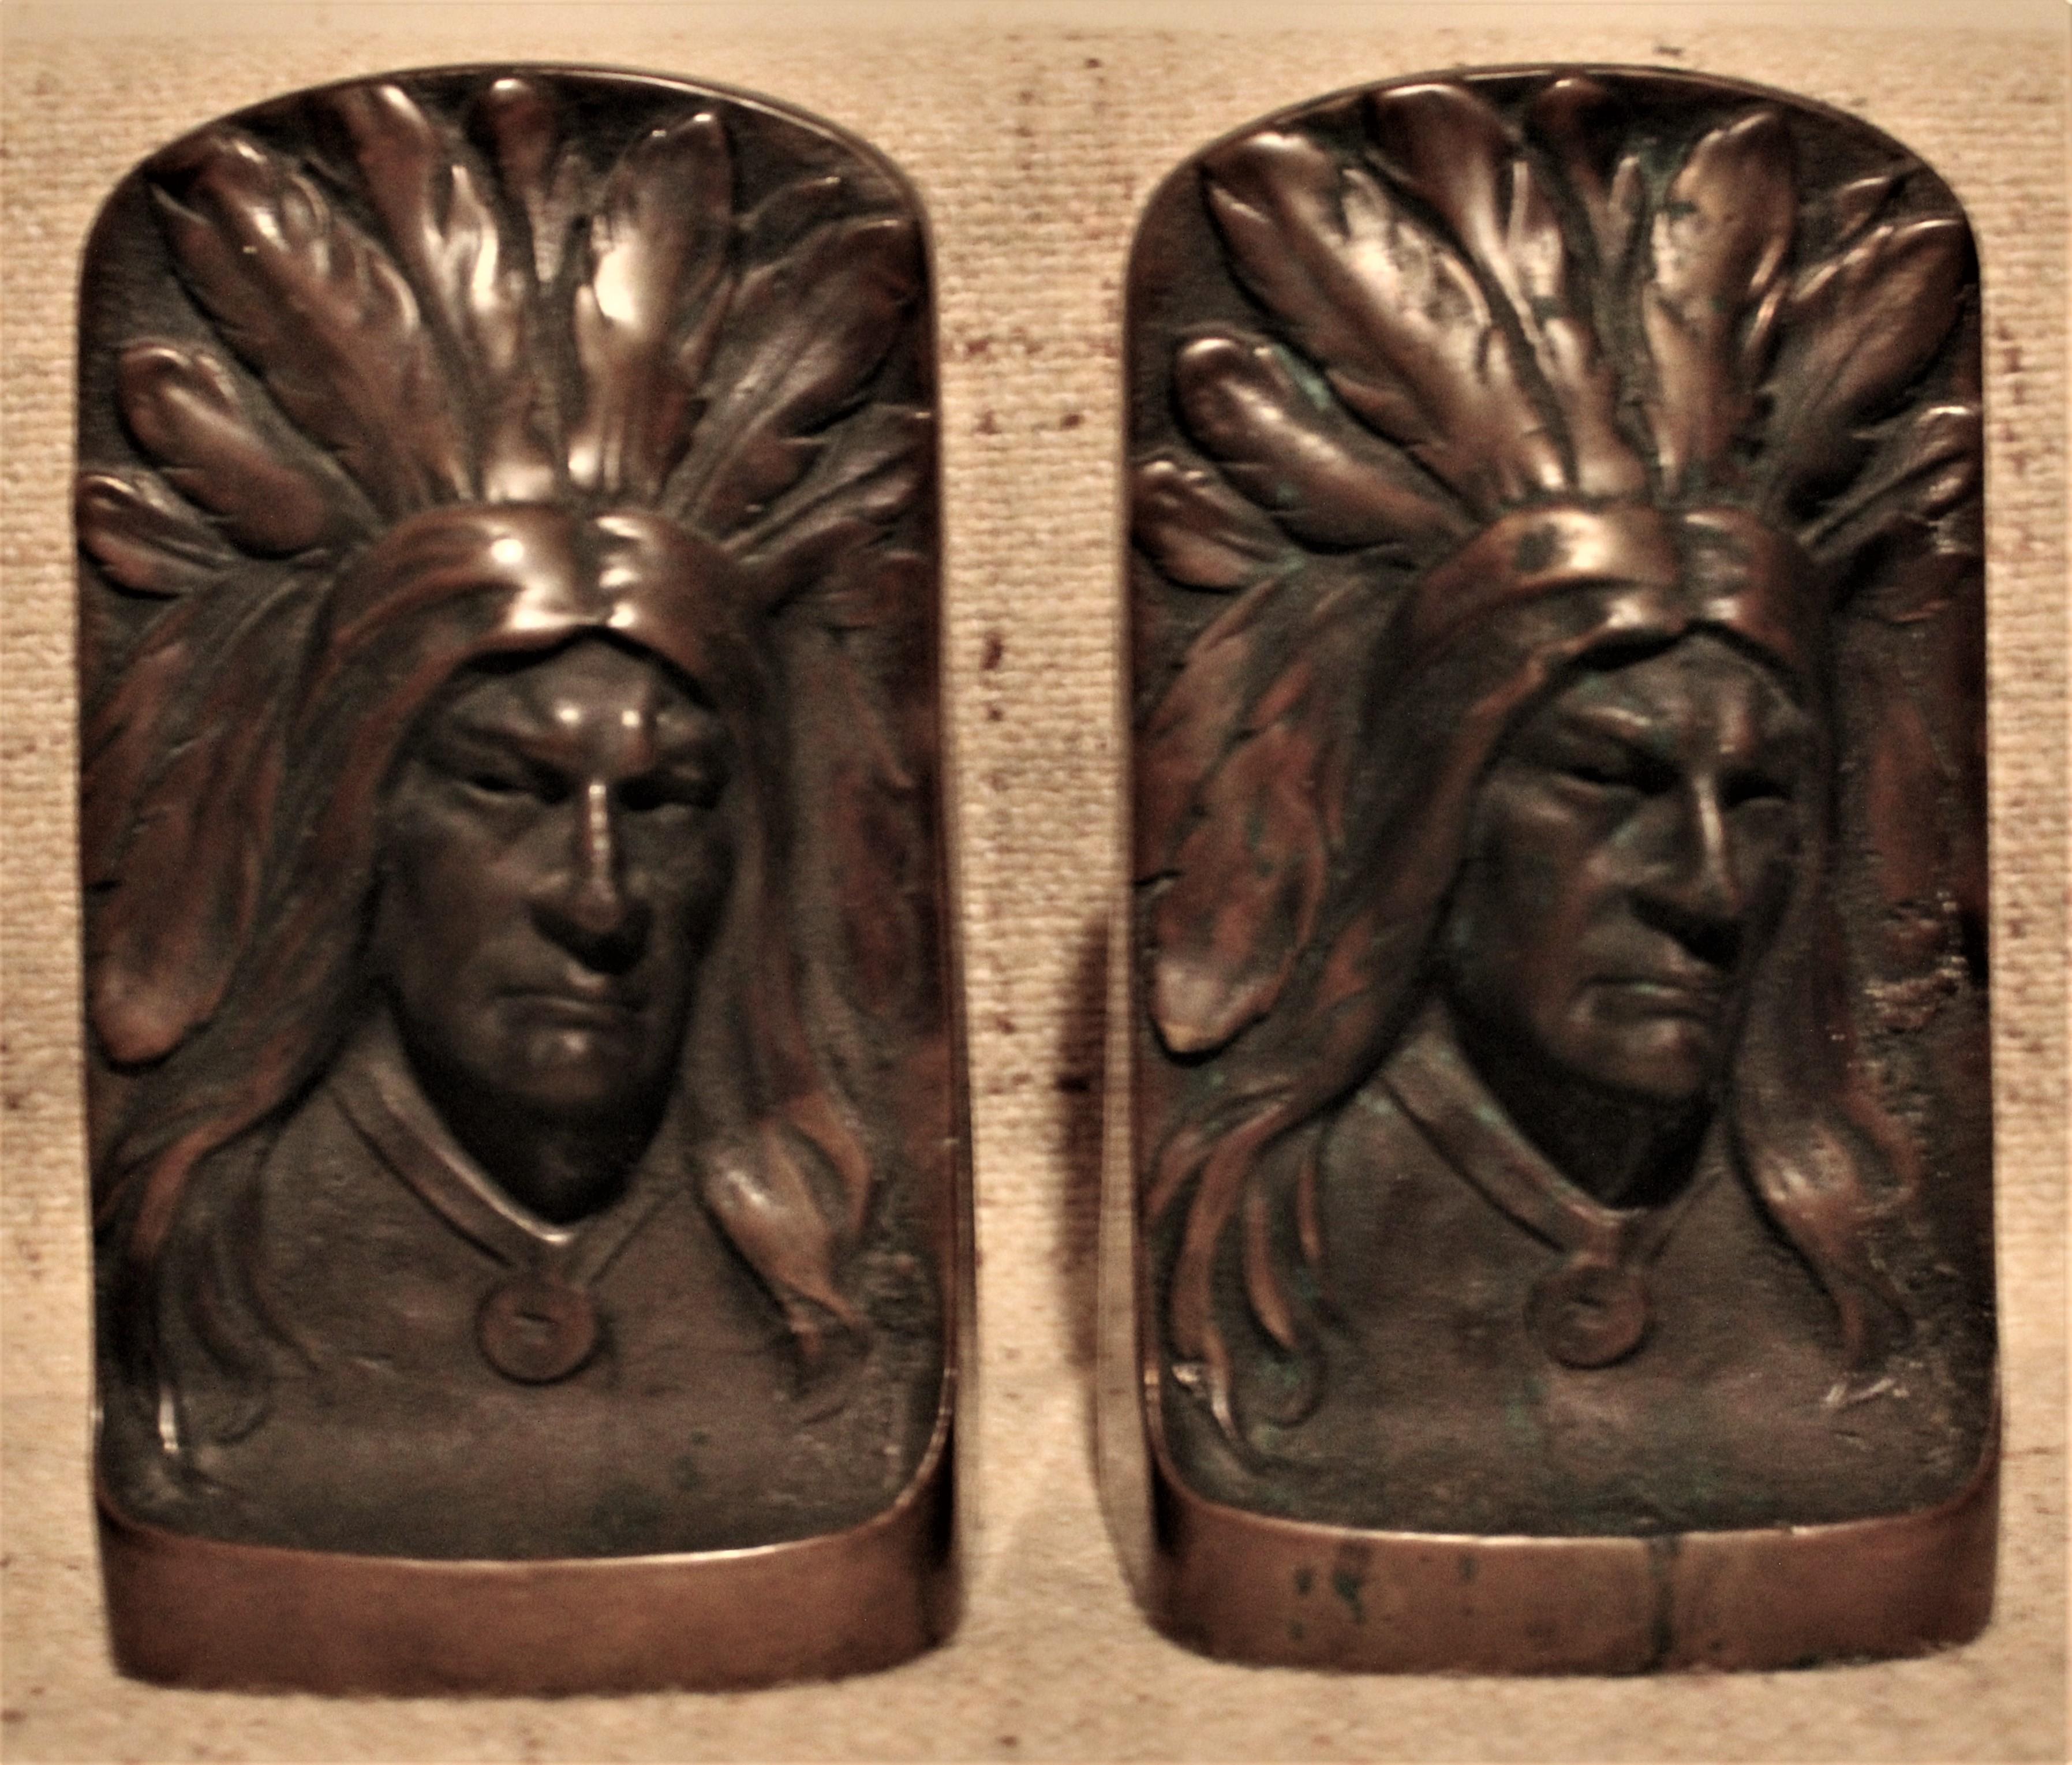 Passendes Paar detailliert gegossener Bronze-Buchstützen, die die Büste eines nordamerikanischen Indianerhäuptlings darstellen. Es gibt weder Herstellermarken, Initialen oder Signaturen eines Künstlers oder einer Gießerei auf diesen Stücken, noch